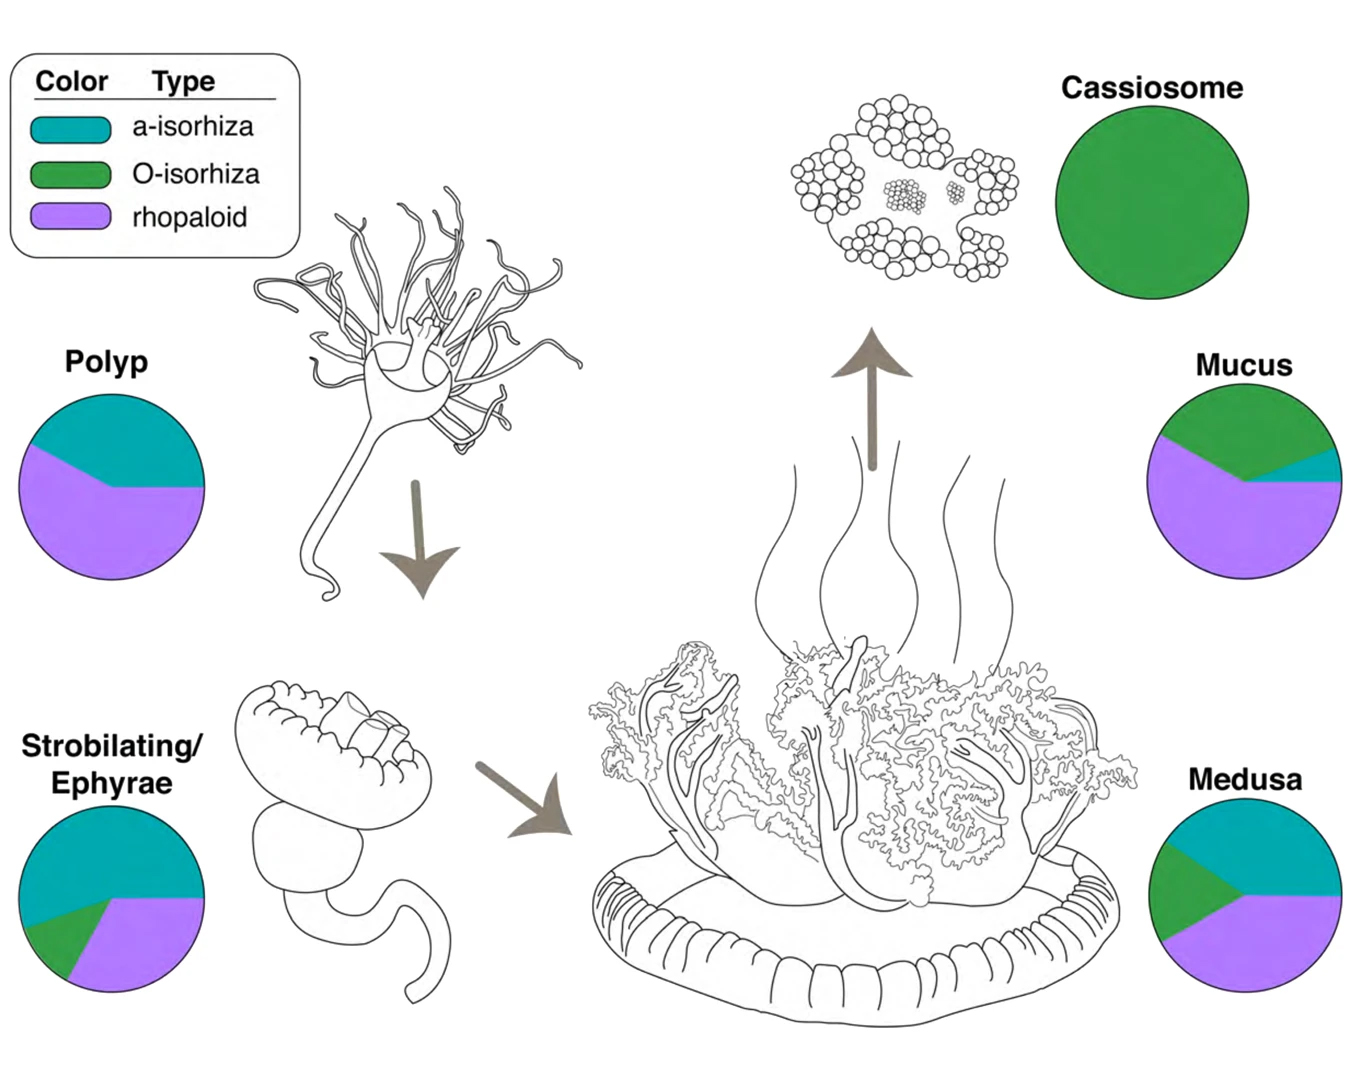 Etapas del ciclo de vida de C. xamachana y su moco cargado de casiosomas. (Ames et al., Communications Biology, 2020)